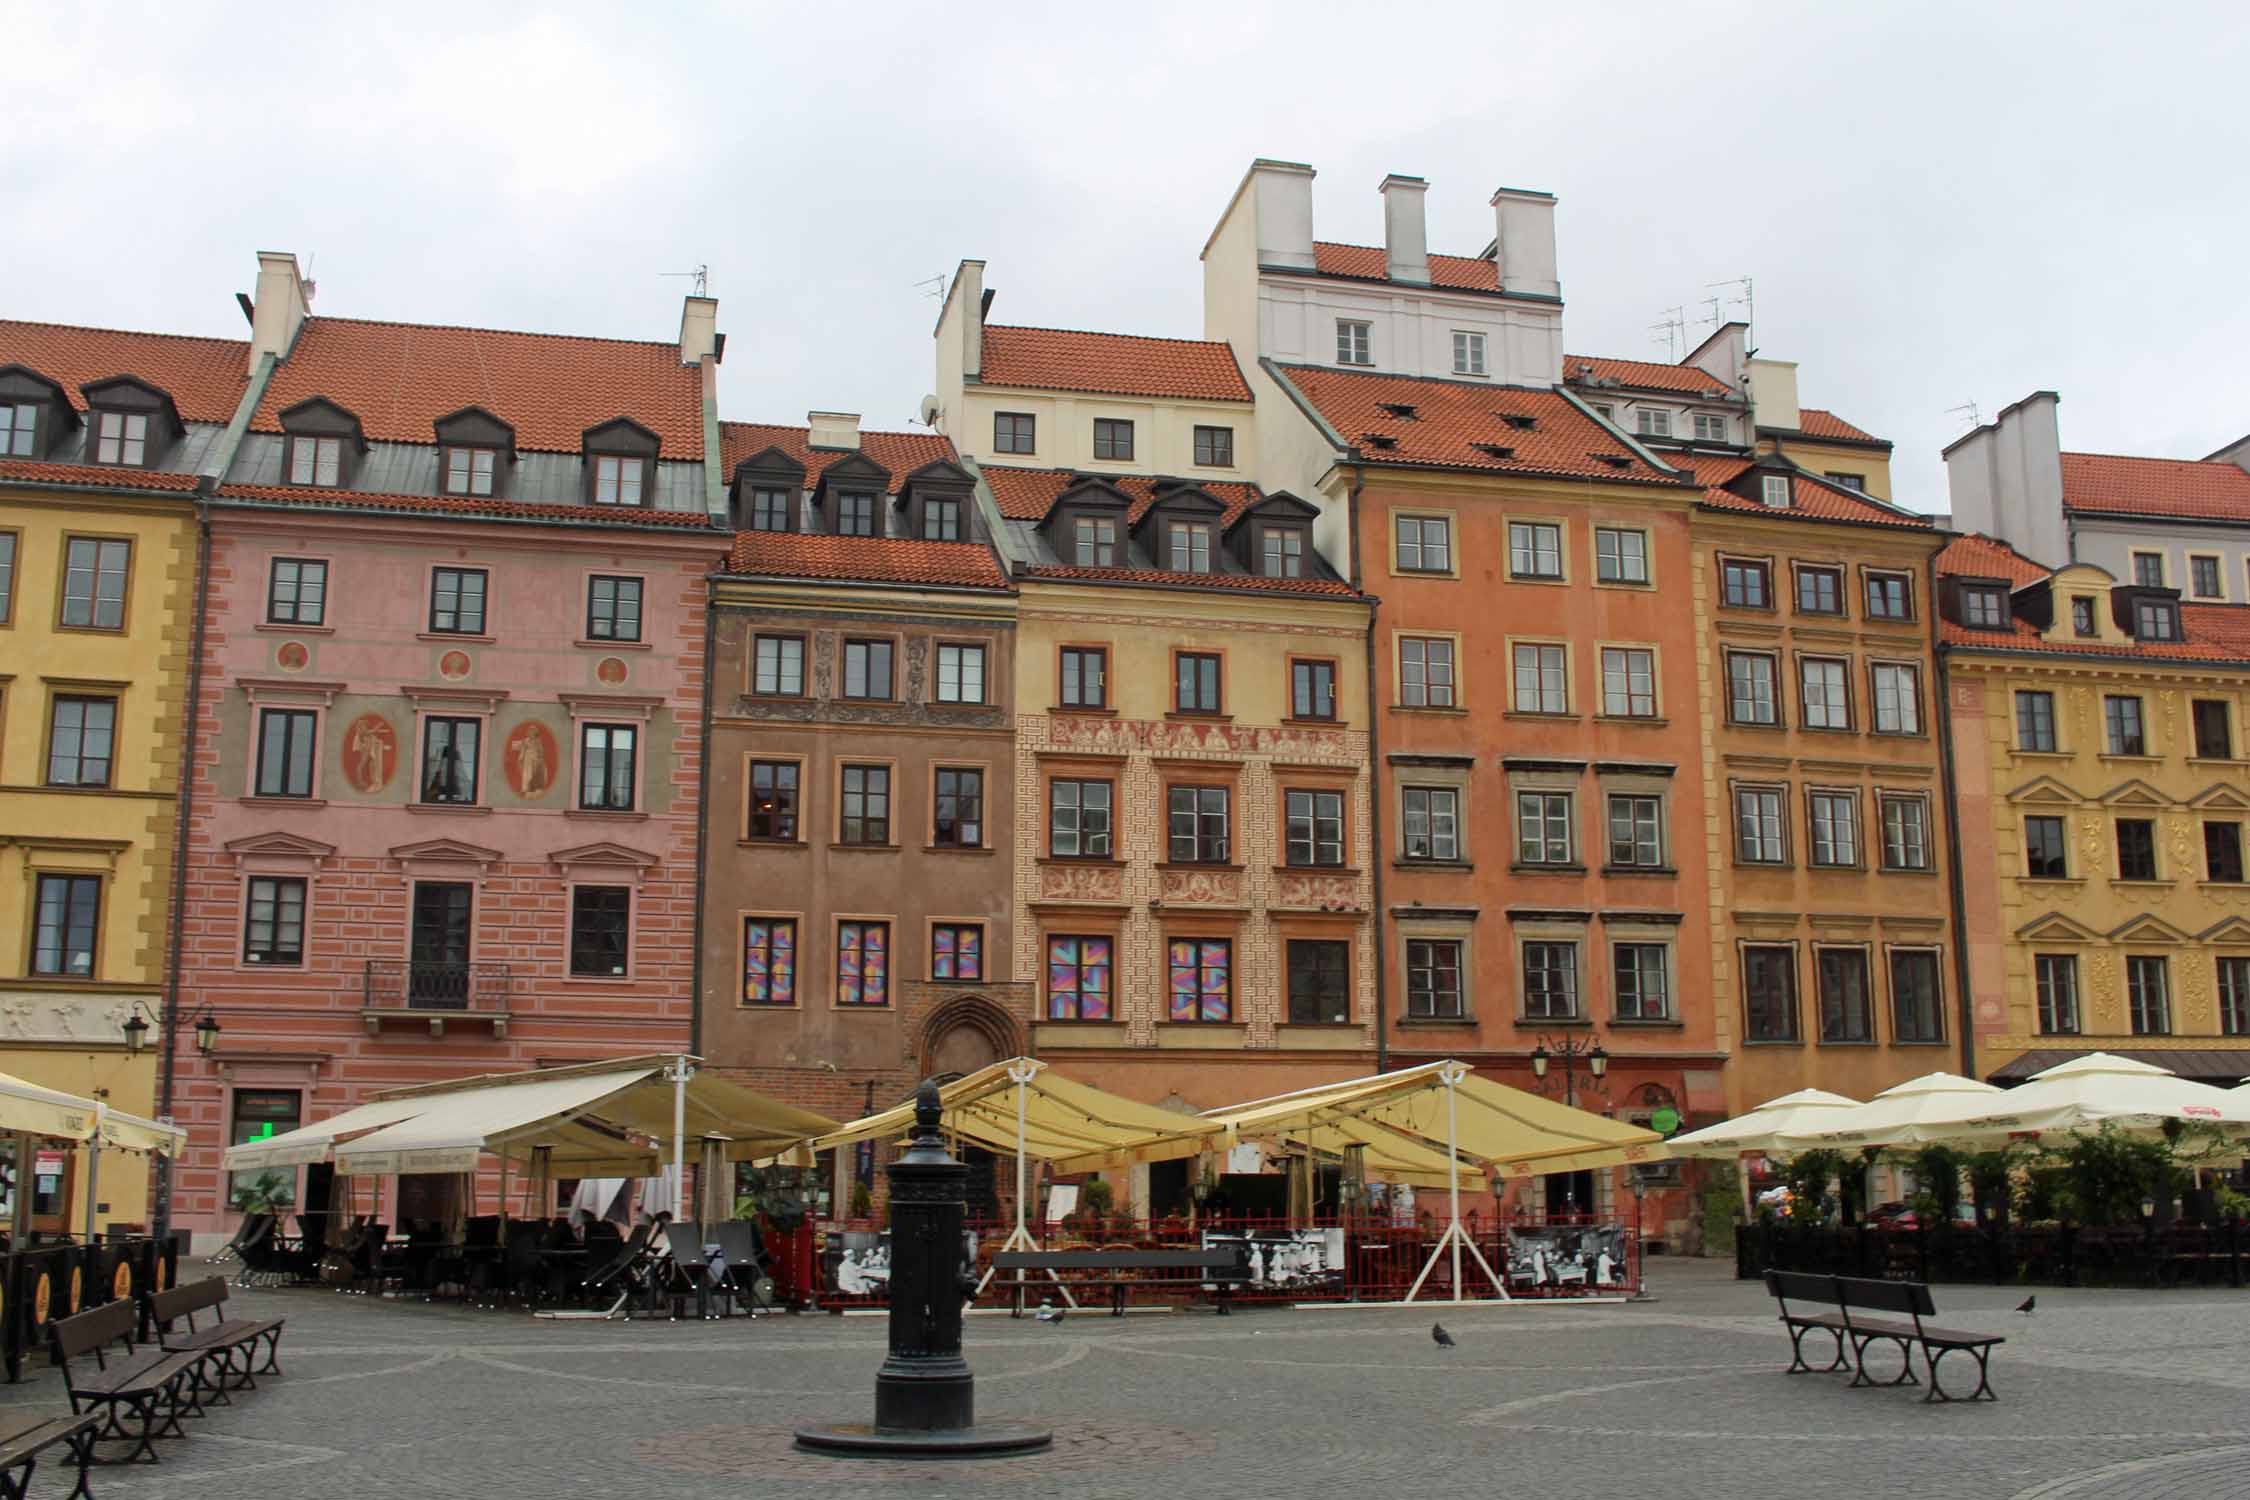 Varsovie, place du Marché, façades colorées